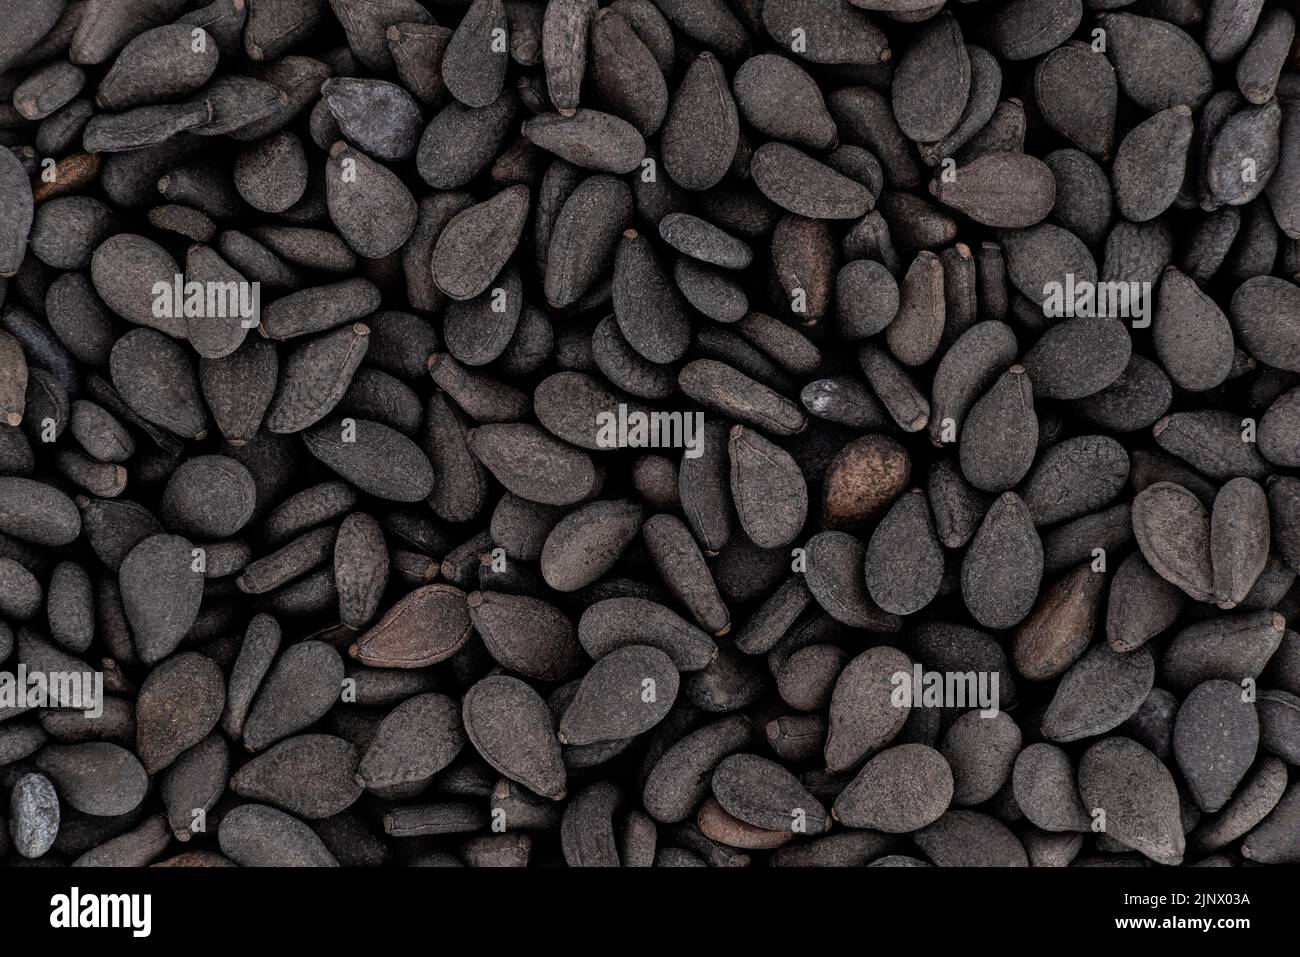 Tas de graines de sésame noir, détails de microscopie, largeur d'image 23mm Banque D'Images